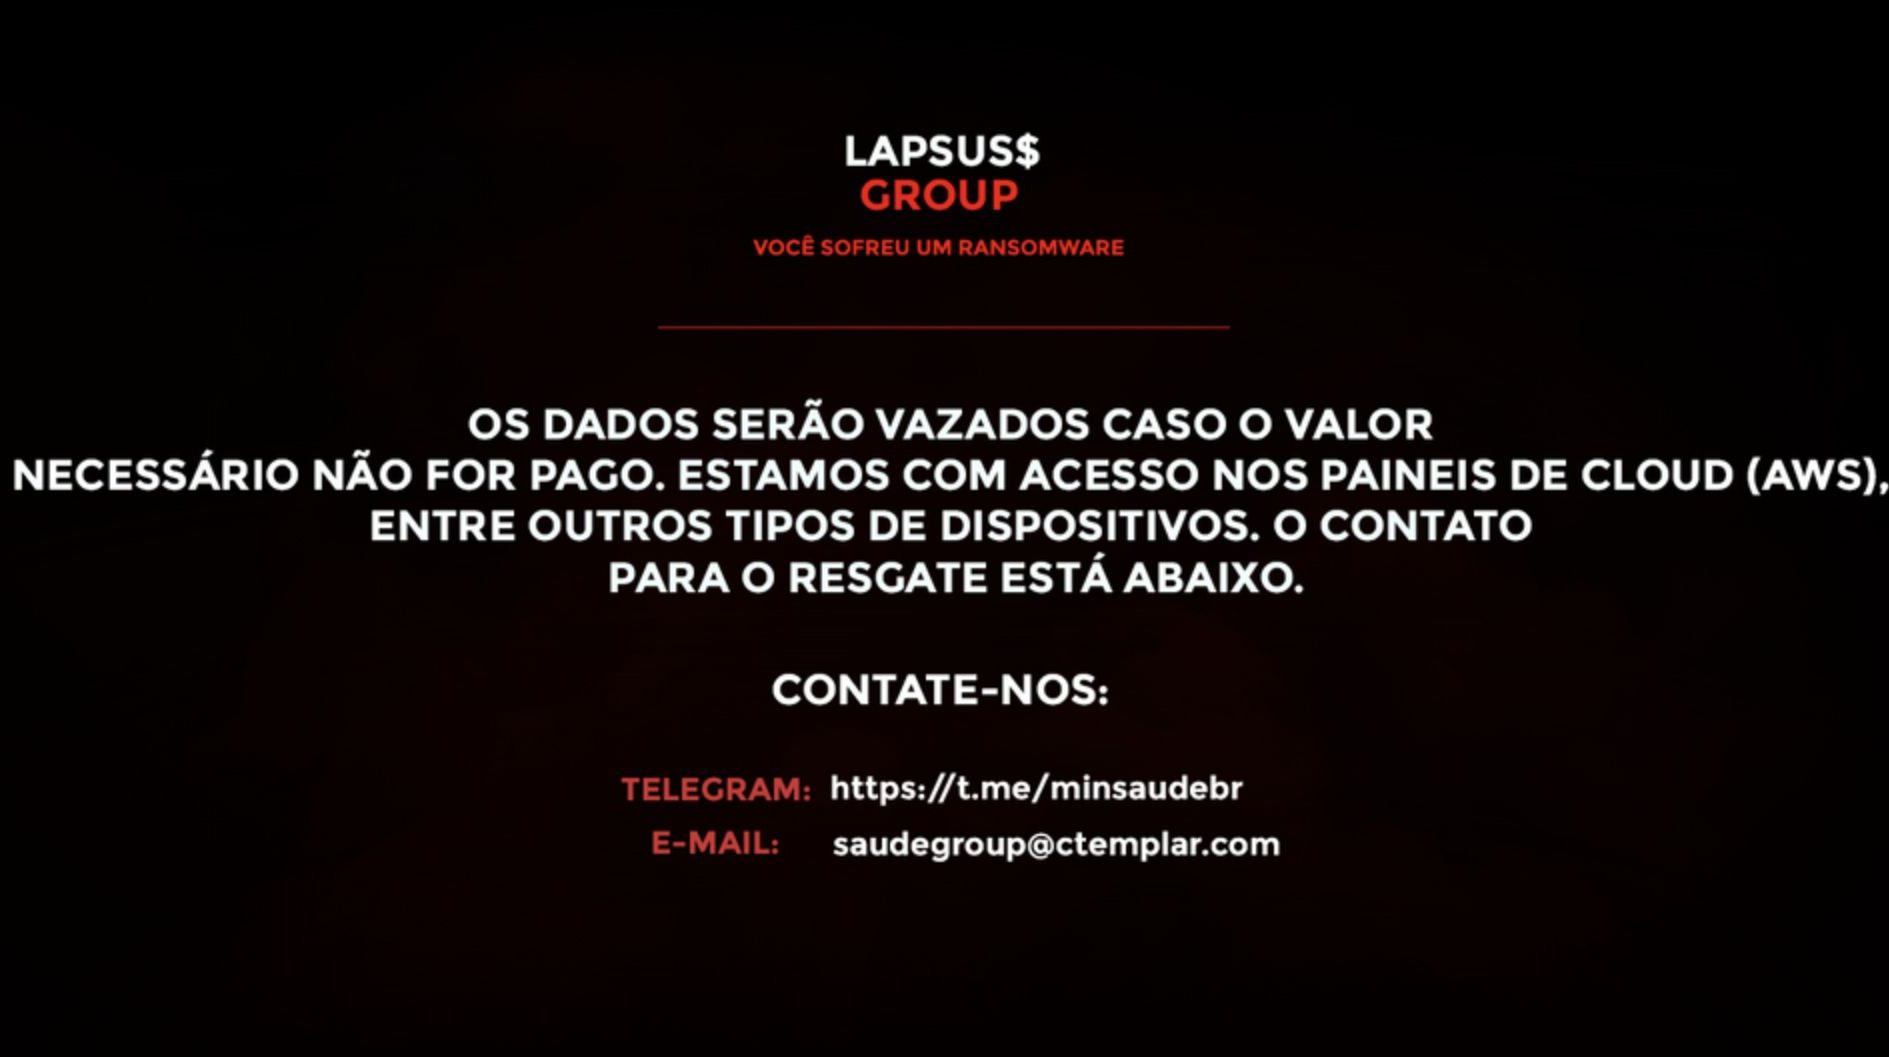 Grupo Lapsus$ já tinha, em dezembro, sido associado a ataques informáticos no Brasil